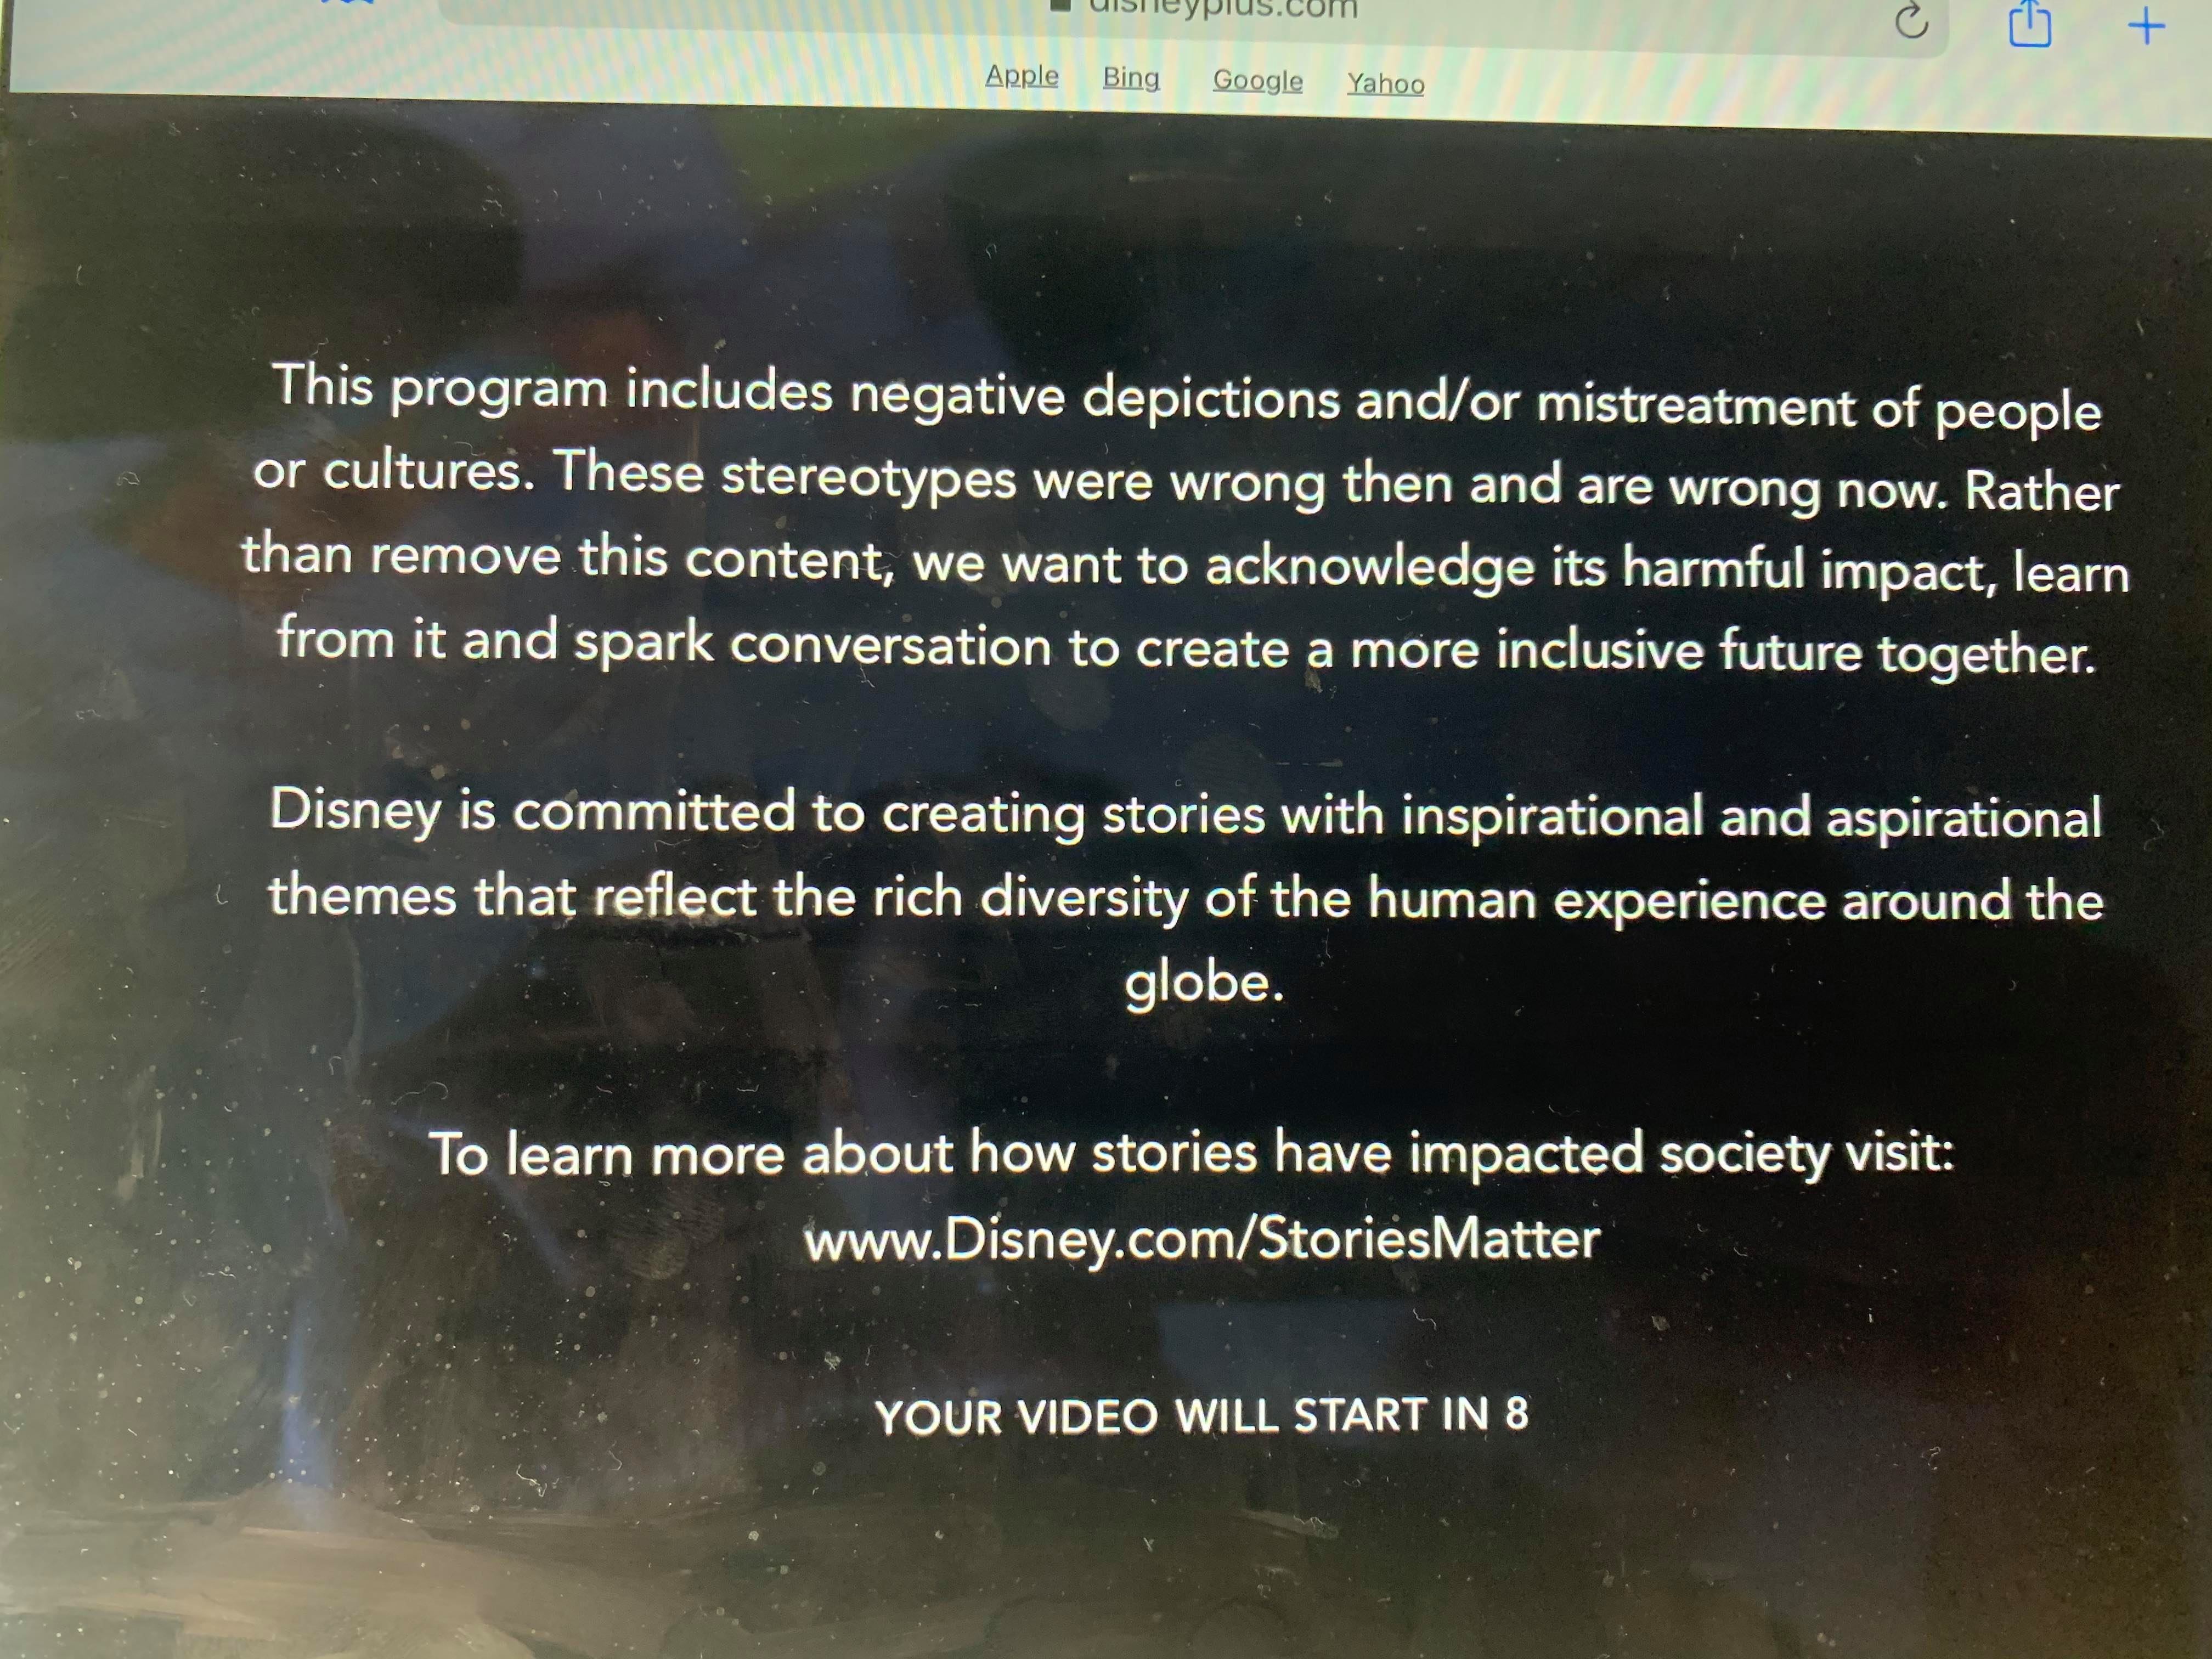 disney+ nu cenzureaza. productile clasice sunt disponibile la sectiunea animatii Disney+ nu cenzureaza. Productile clasice sunt disponibile la sectiunea Animatii 142439212 422246375873919 8064723296865945882 n